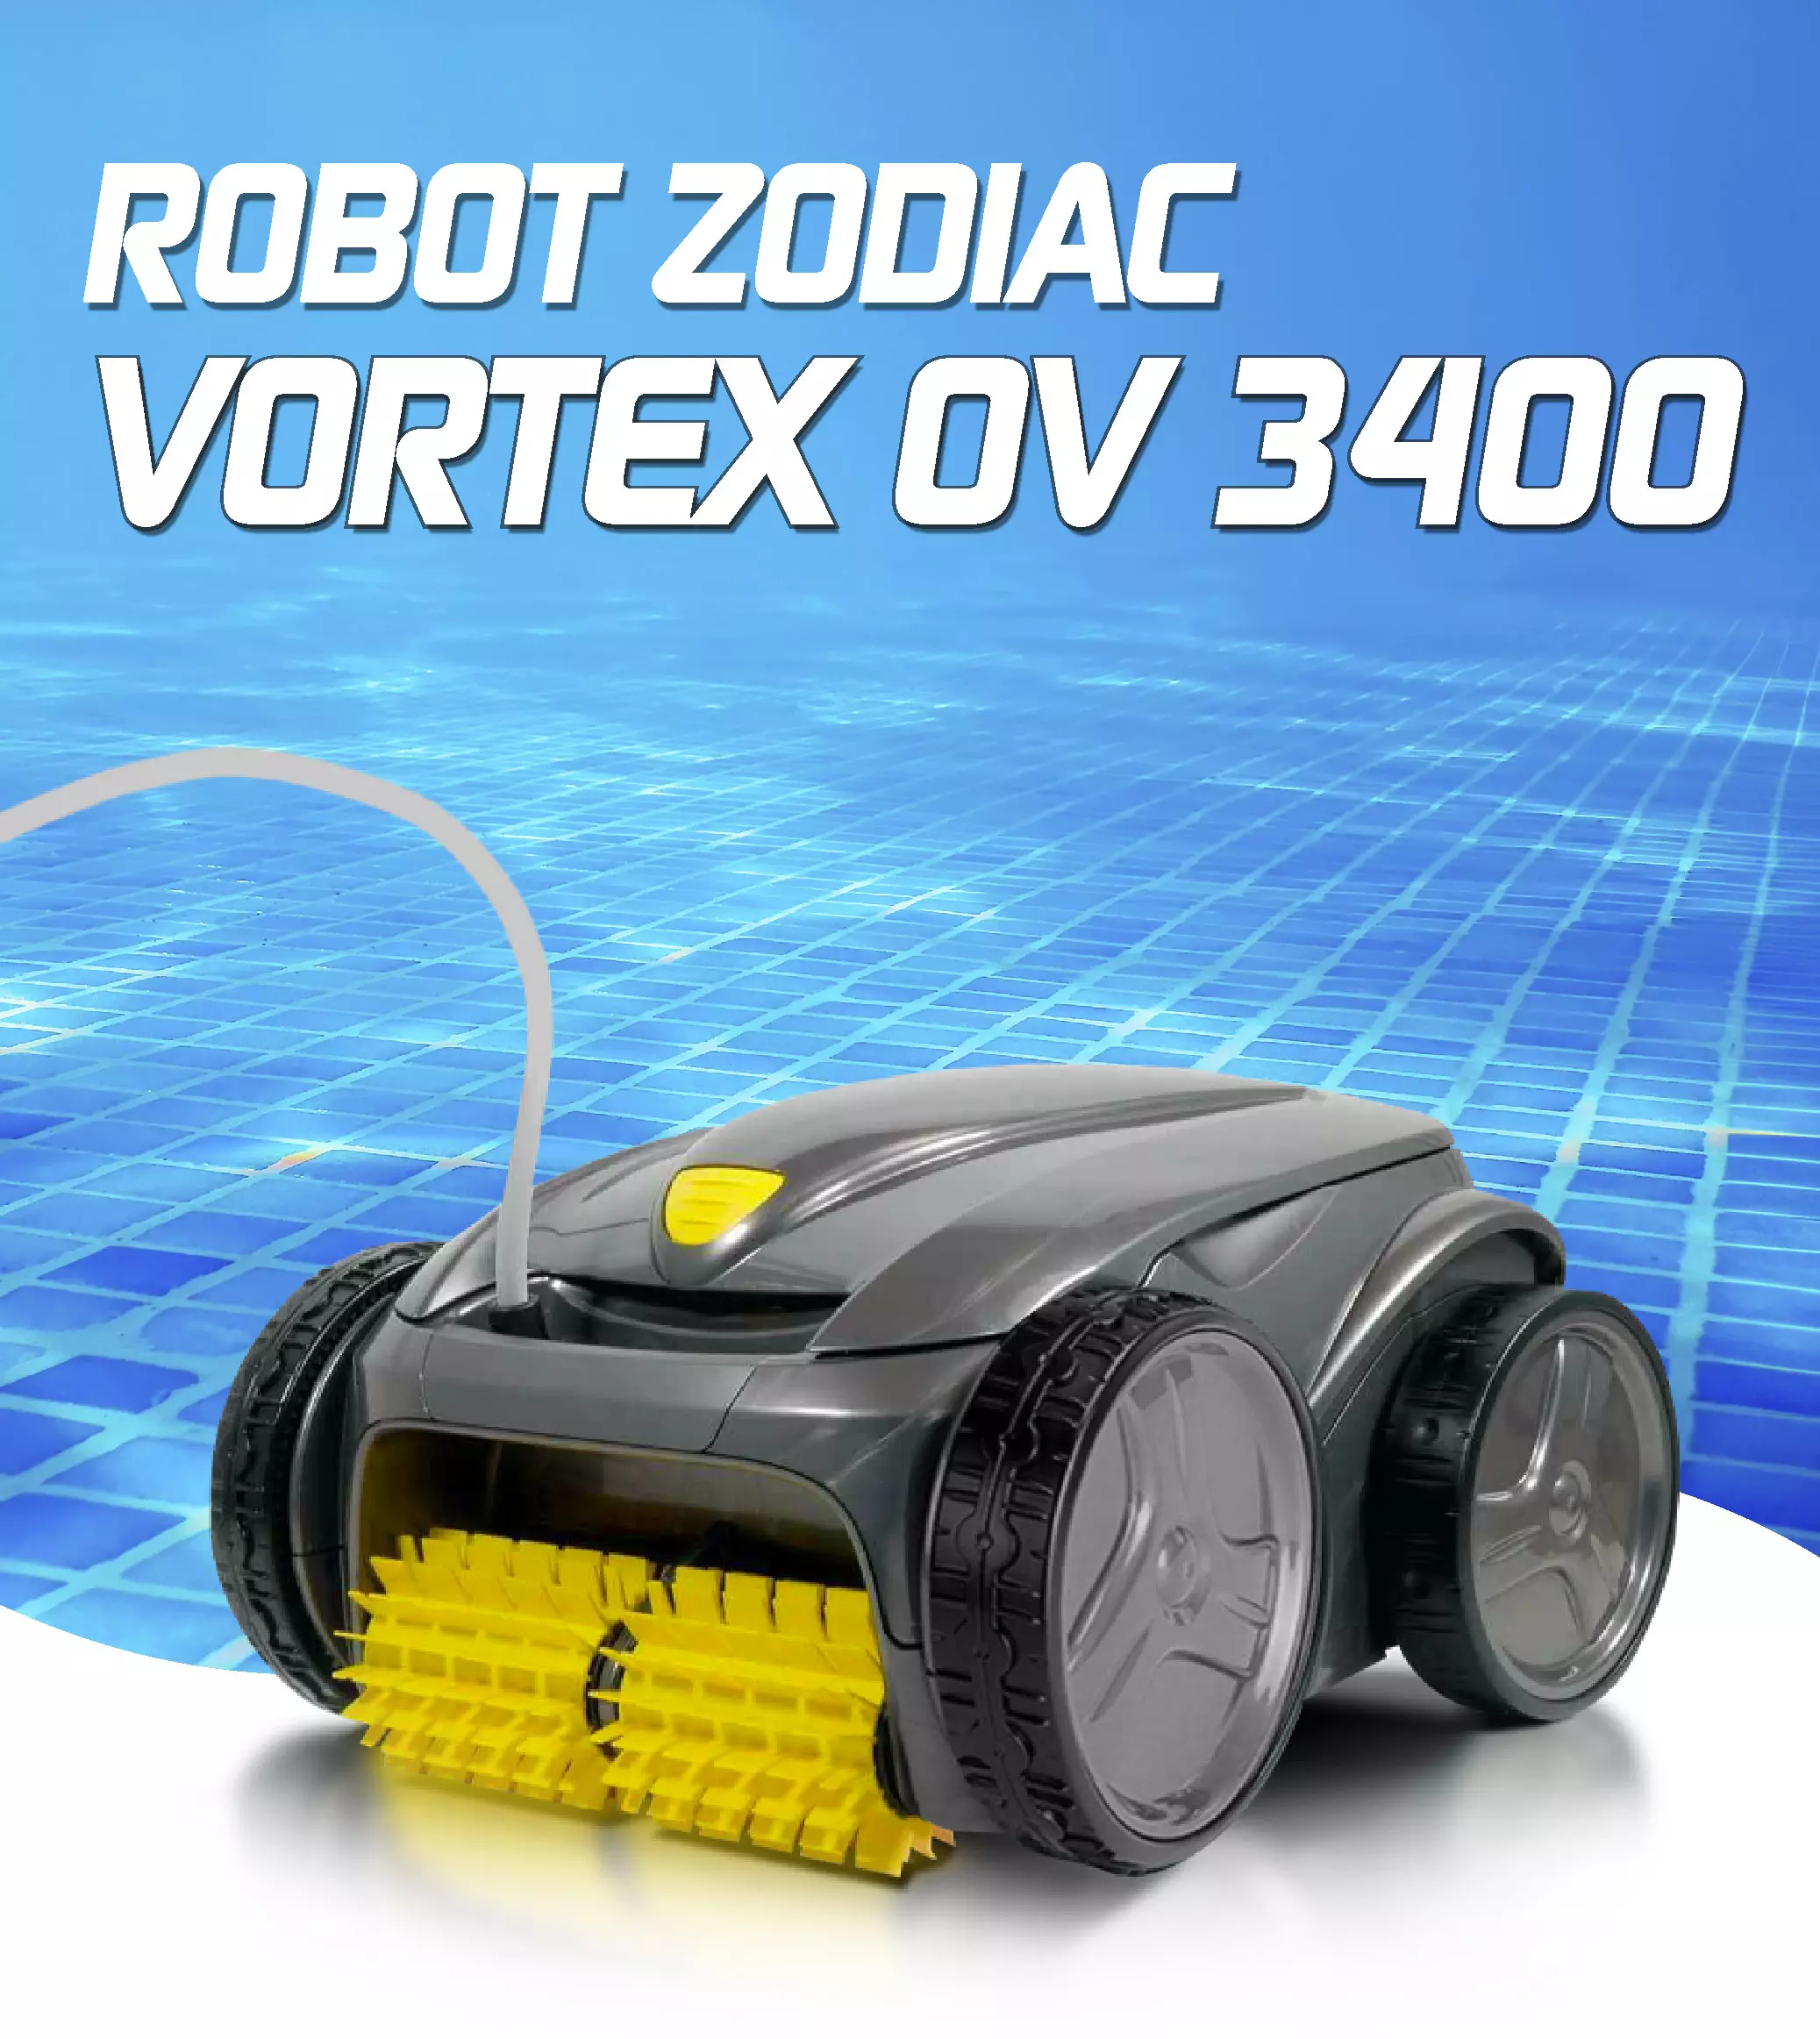 Cómo funciona un robot limpiafondos de piscina Zodiac Vortex 